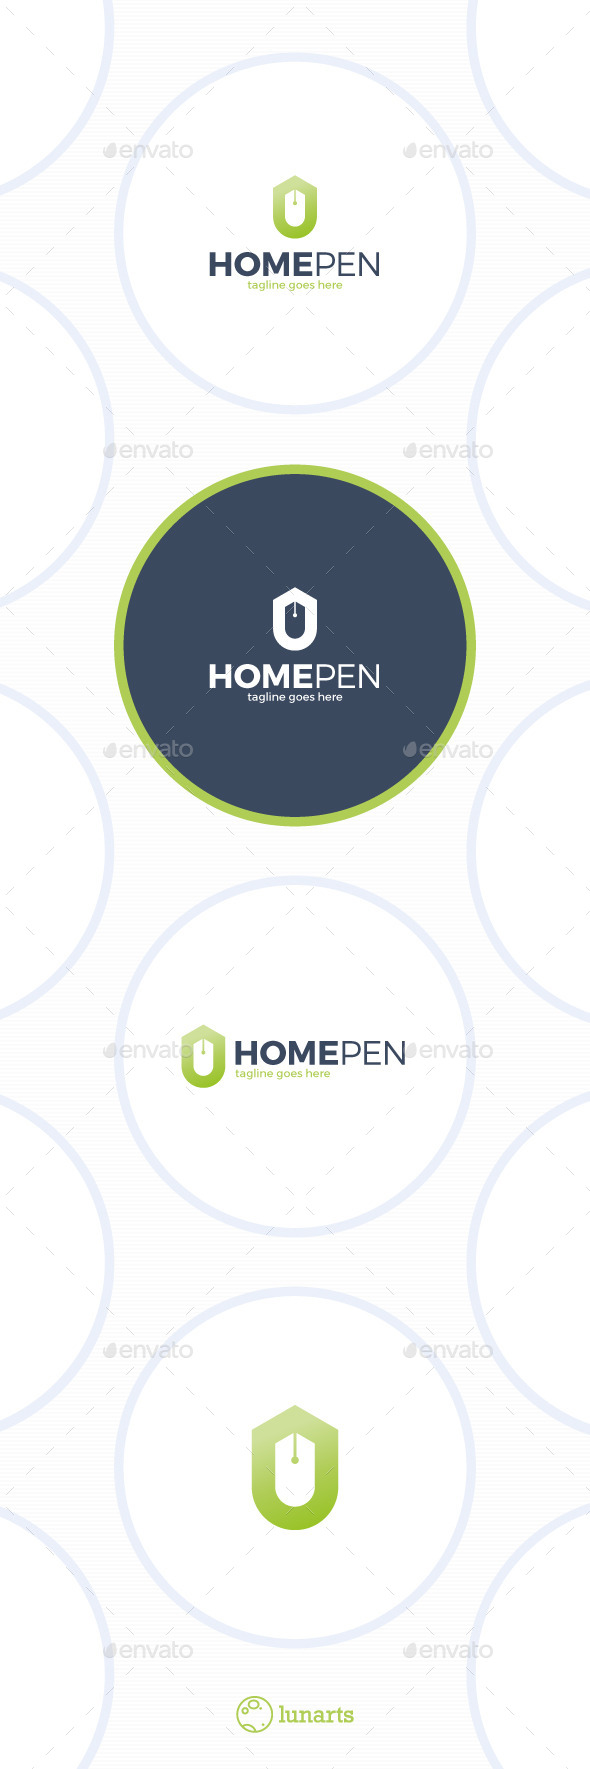 Home Pen Logo